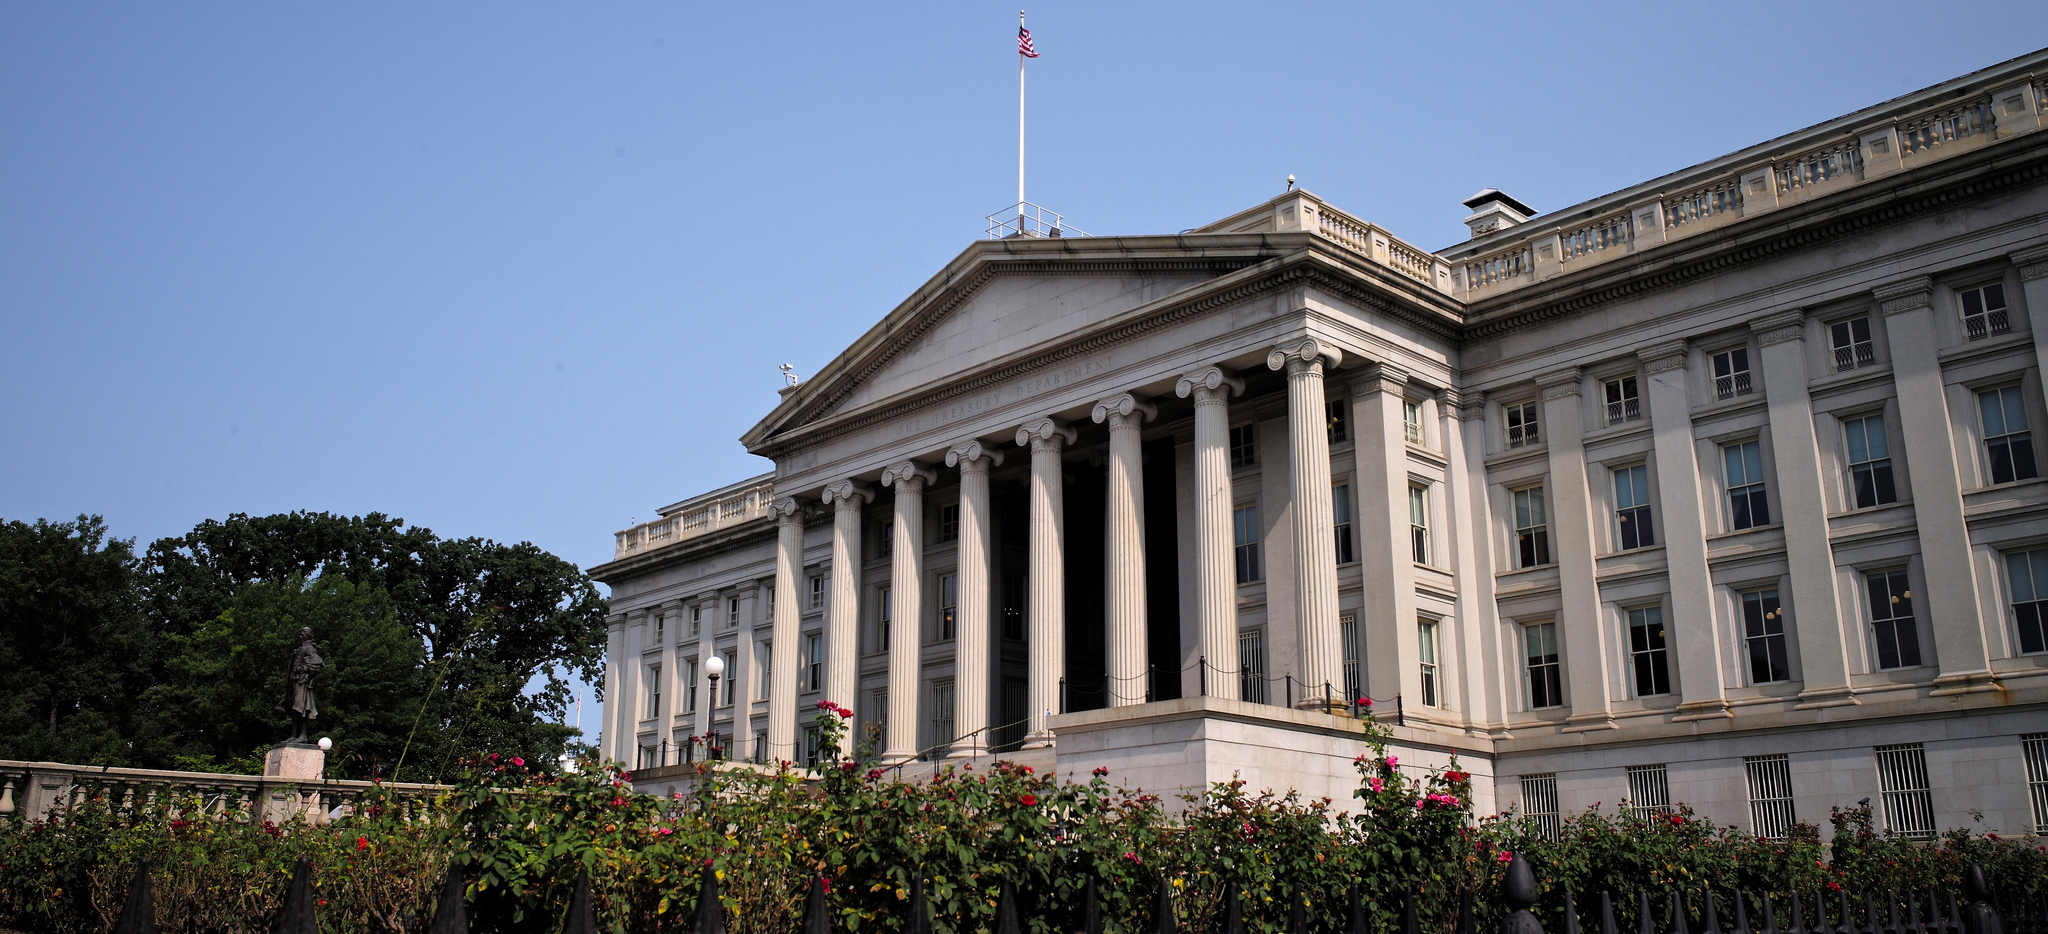 US Treasury Building (Credit: Roman Boed)